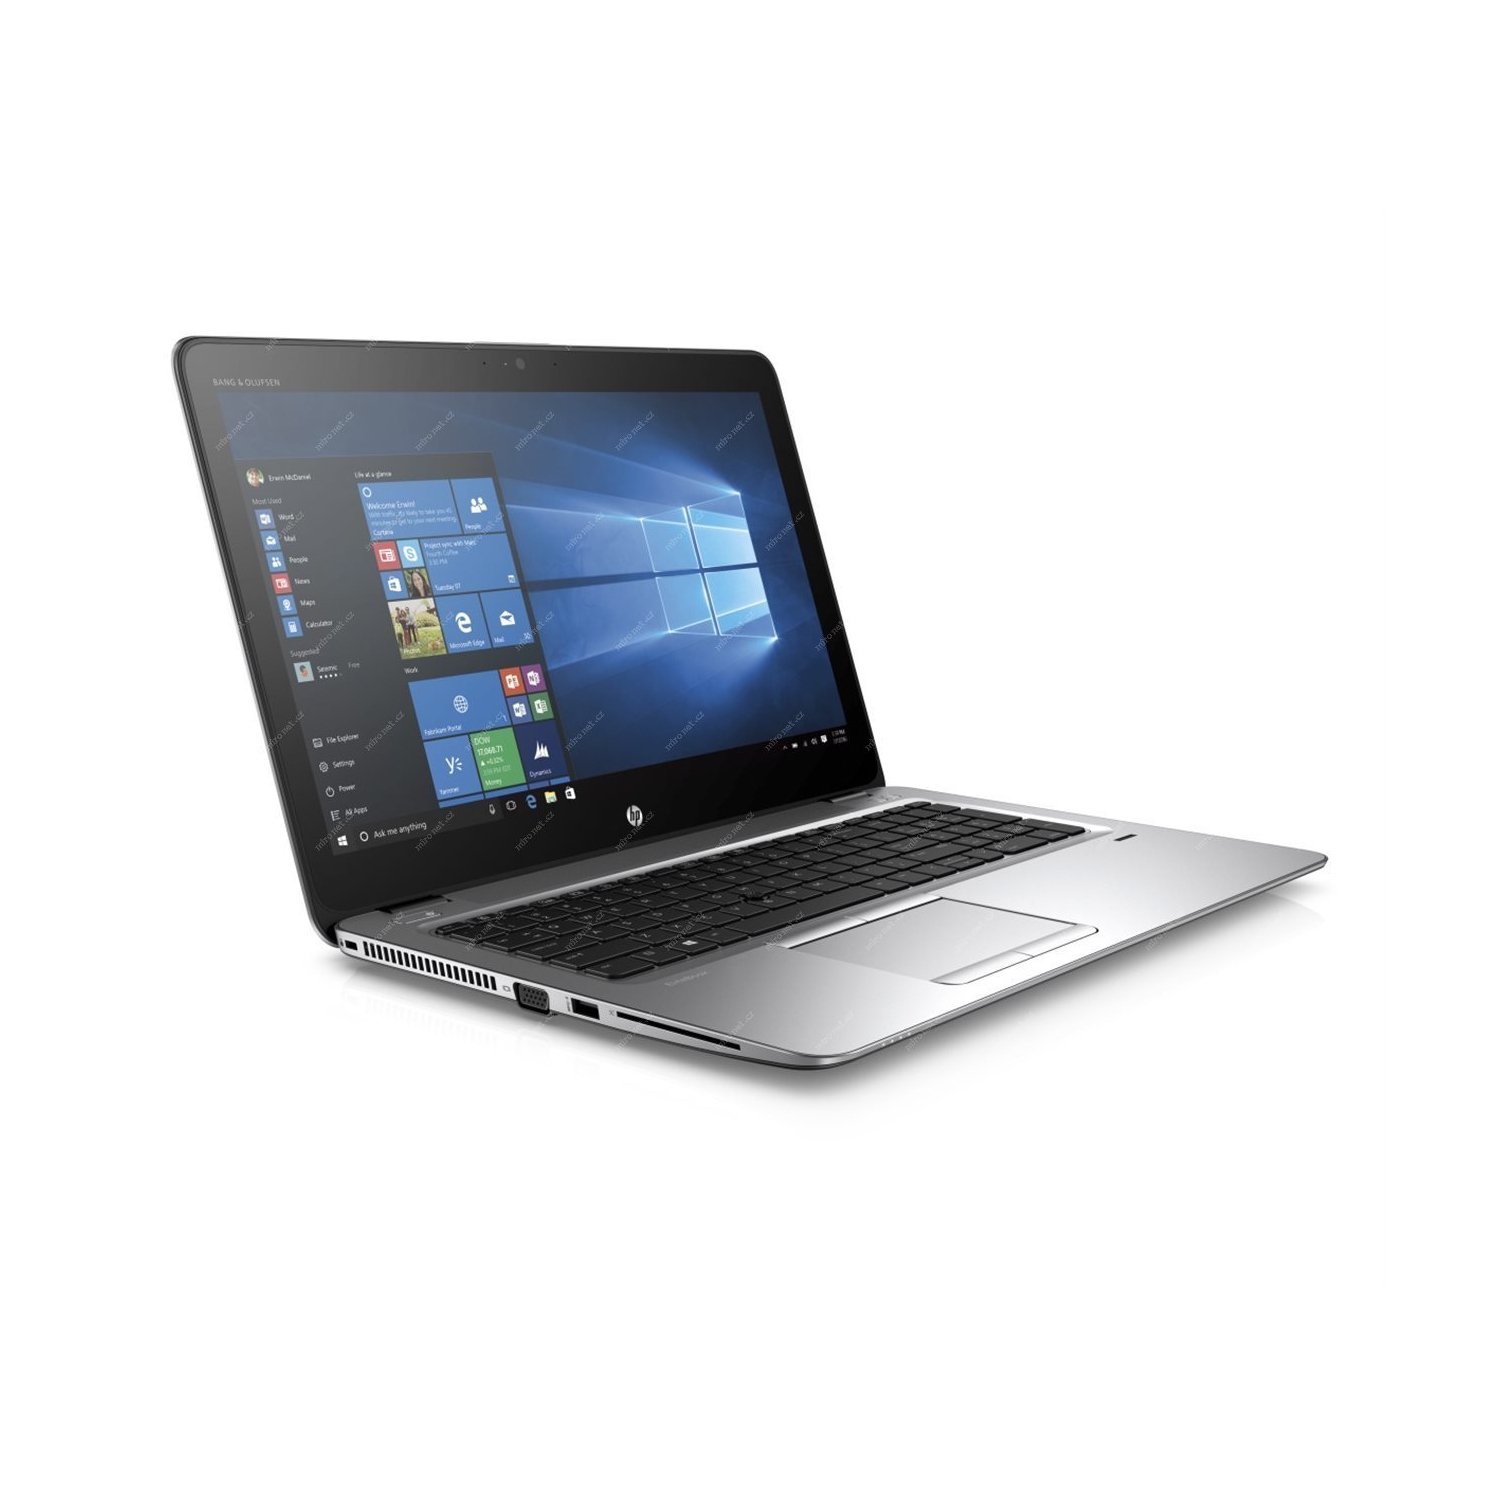 HP EliteBook 850 G3 15.6" laptop, 6th Gen Intel Core i5-6300U, 8GB DDR4 RAM, 500GB SATA, Windows 10 Pro - REFURBISHED